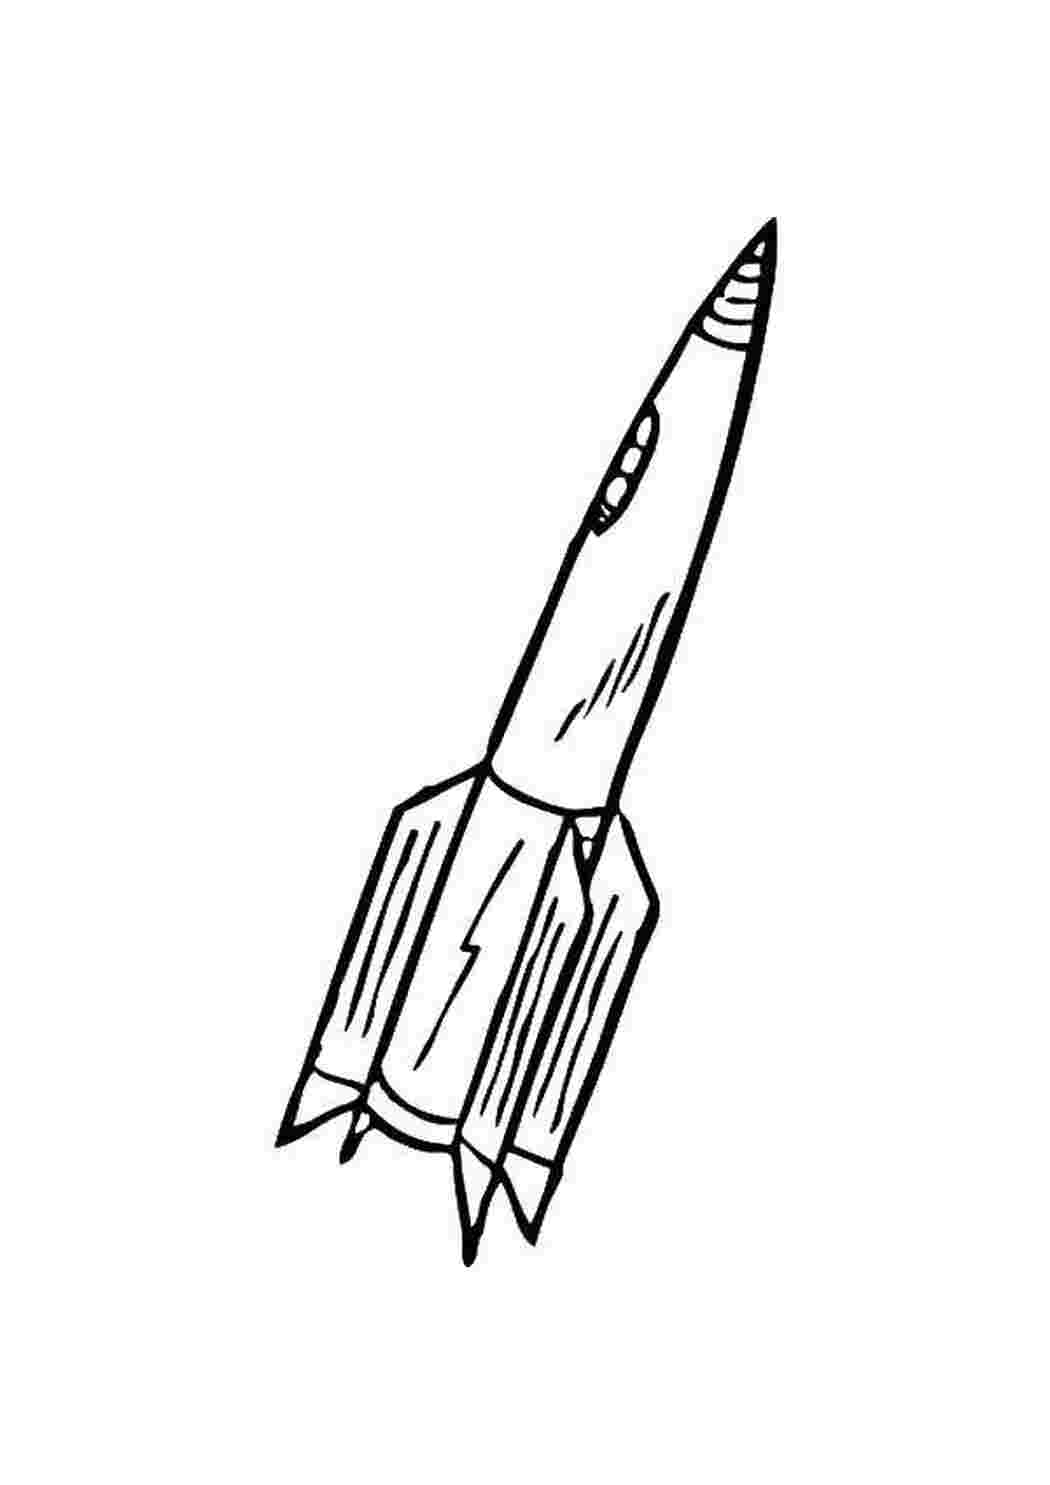 Ракета рисунок для детей